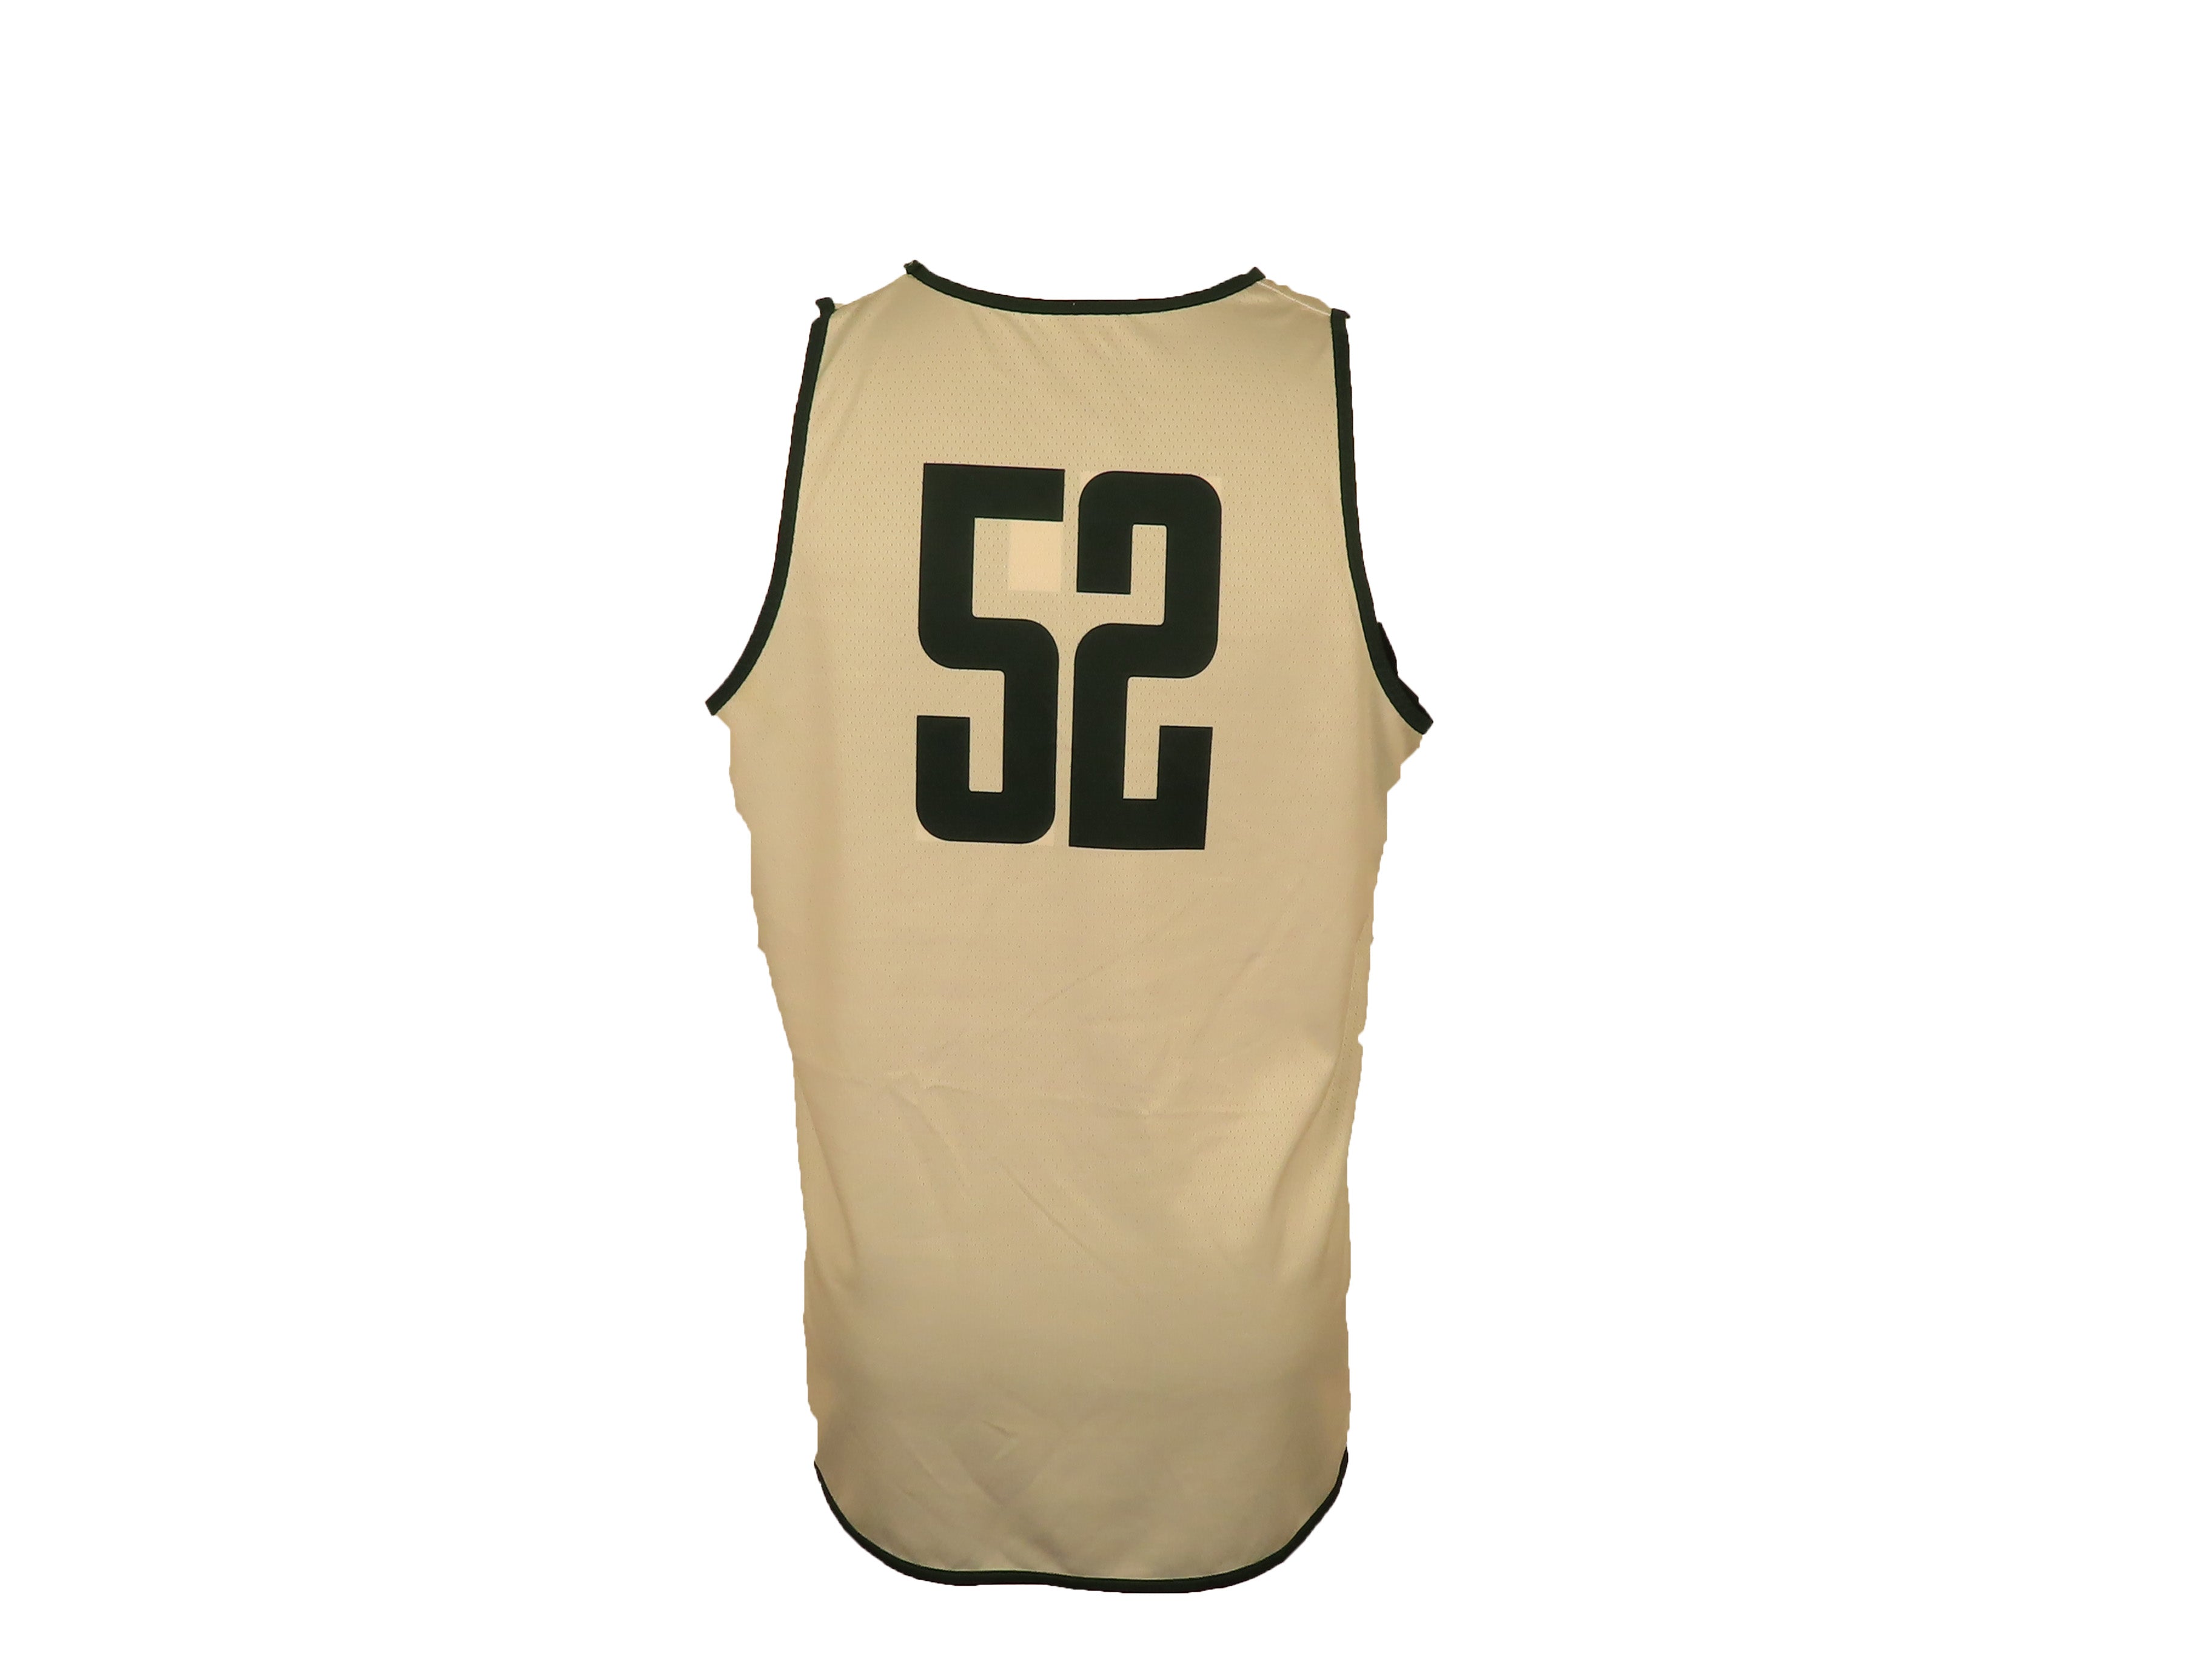 Nike Green & White Reversible Women's Basketball #52 Jersey Size XL